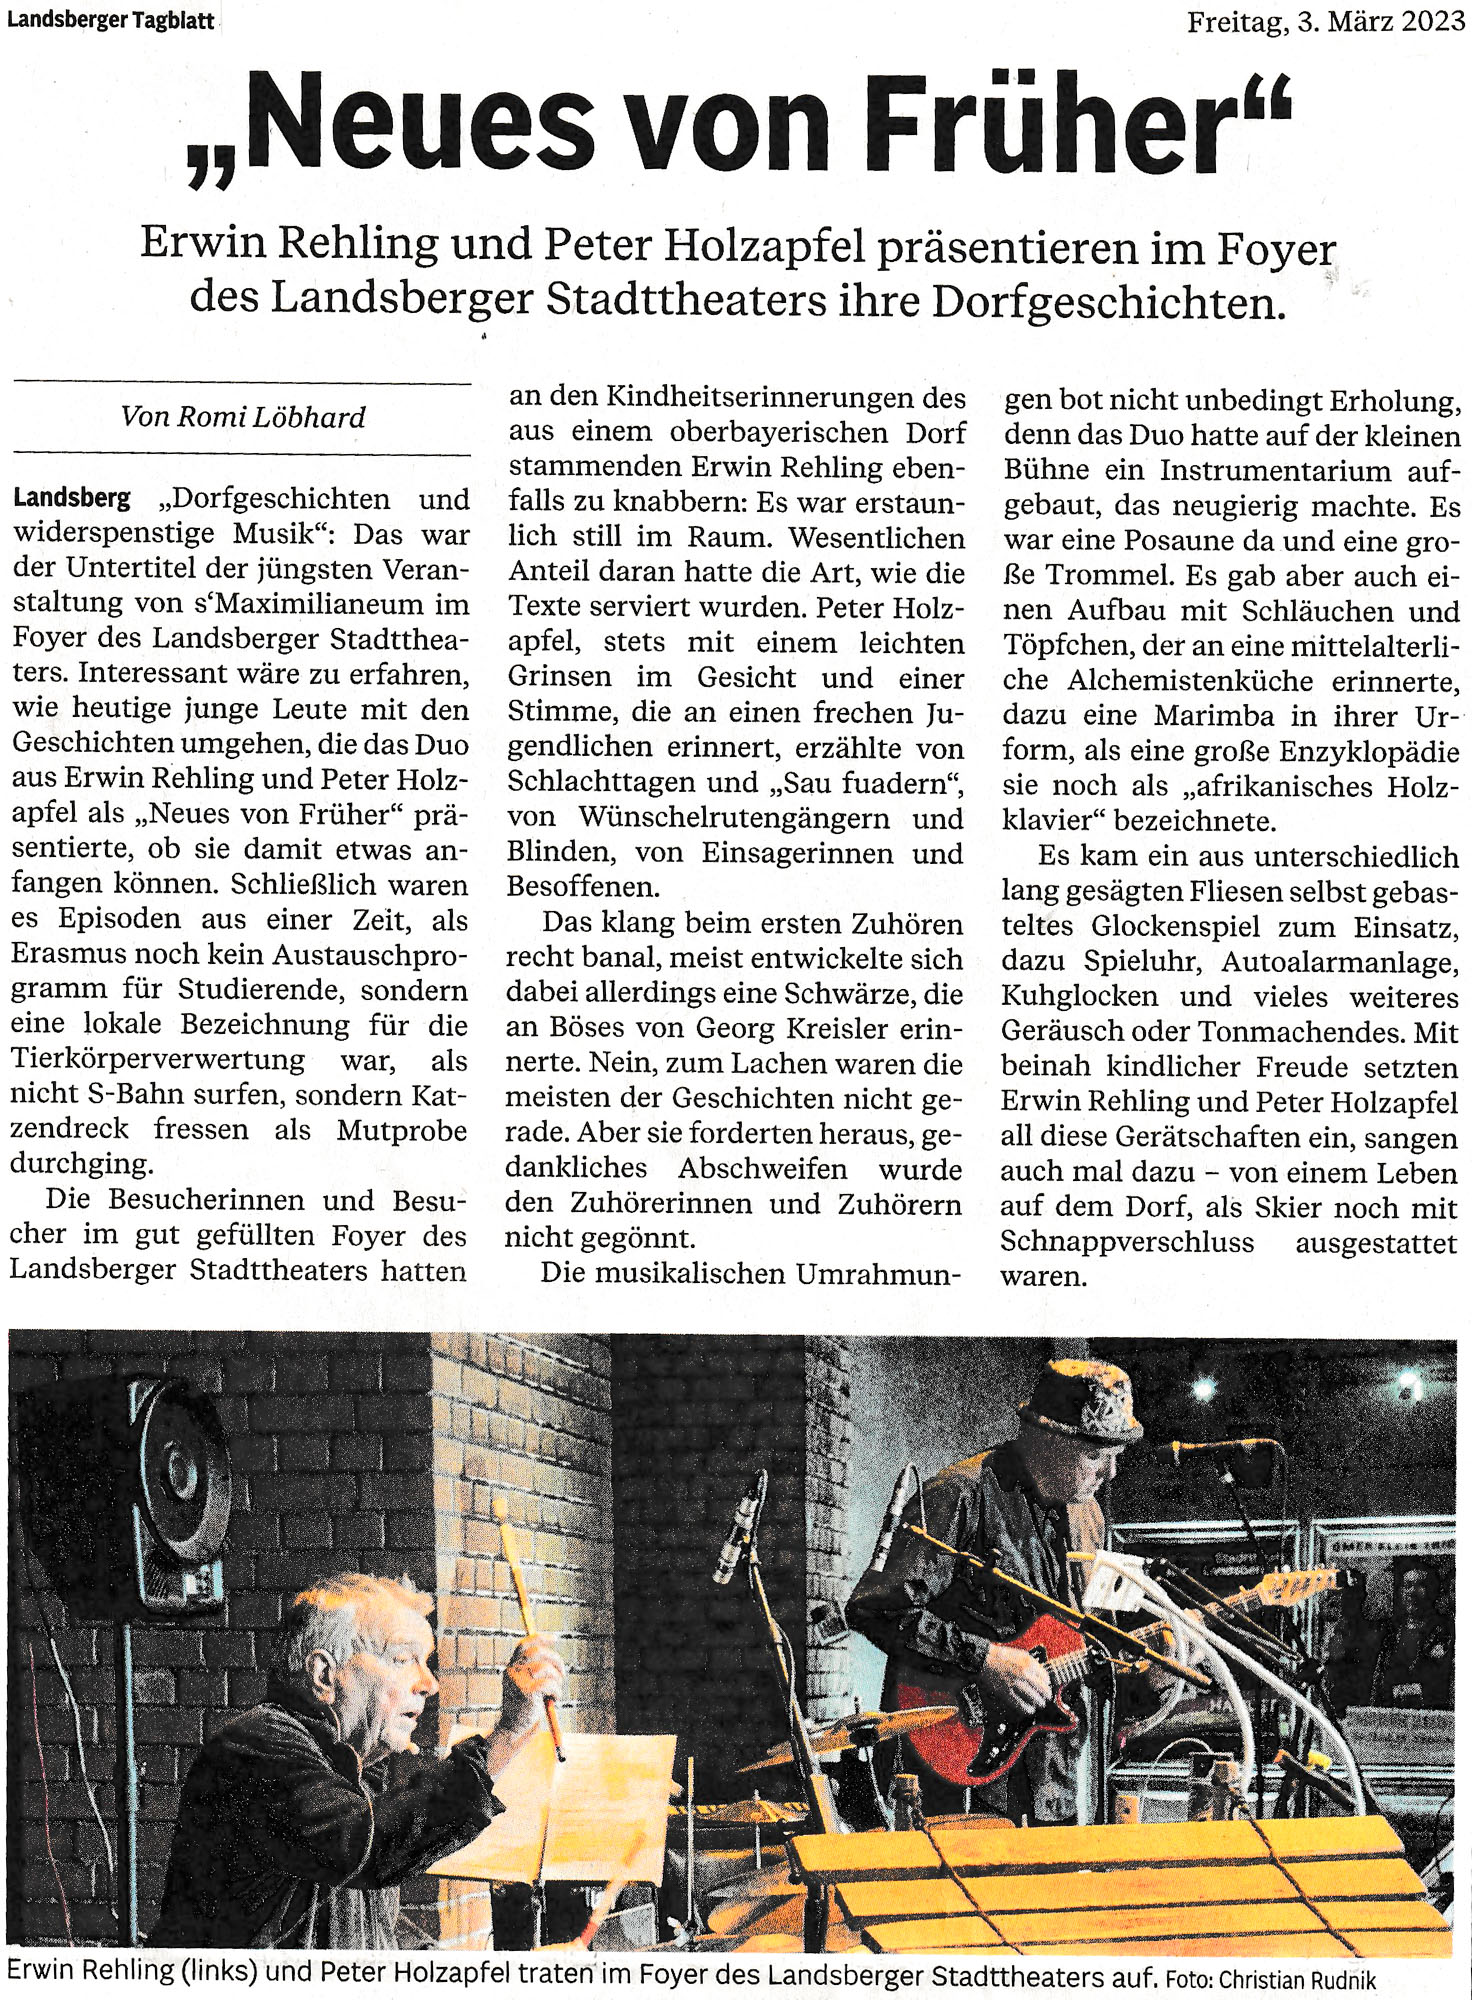 Bild der Kritik aus dem Landsberger Tagblatt vom 03.03.2023